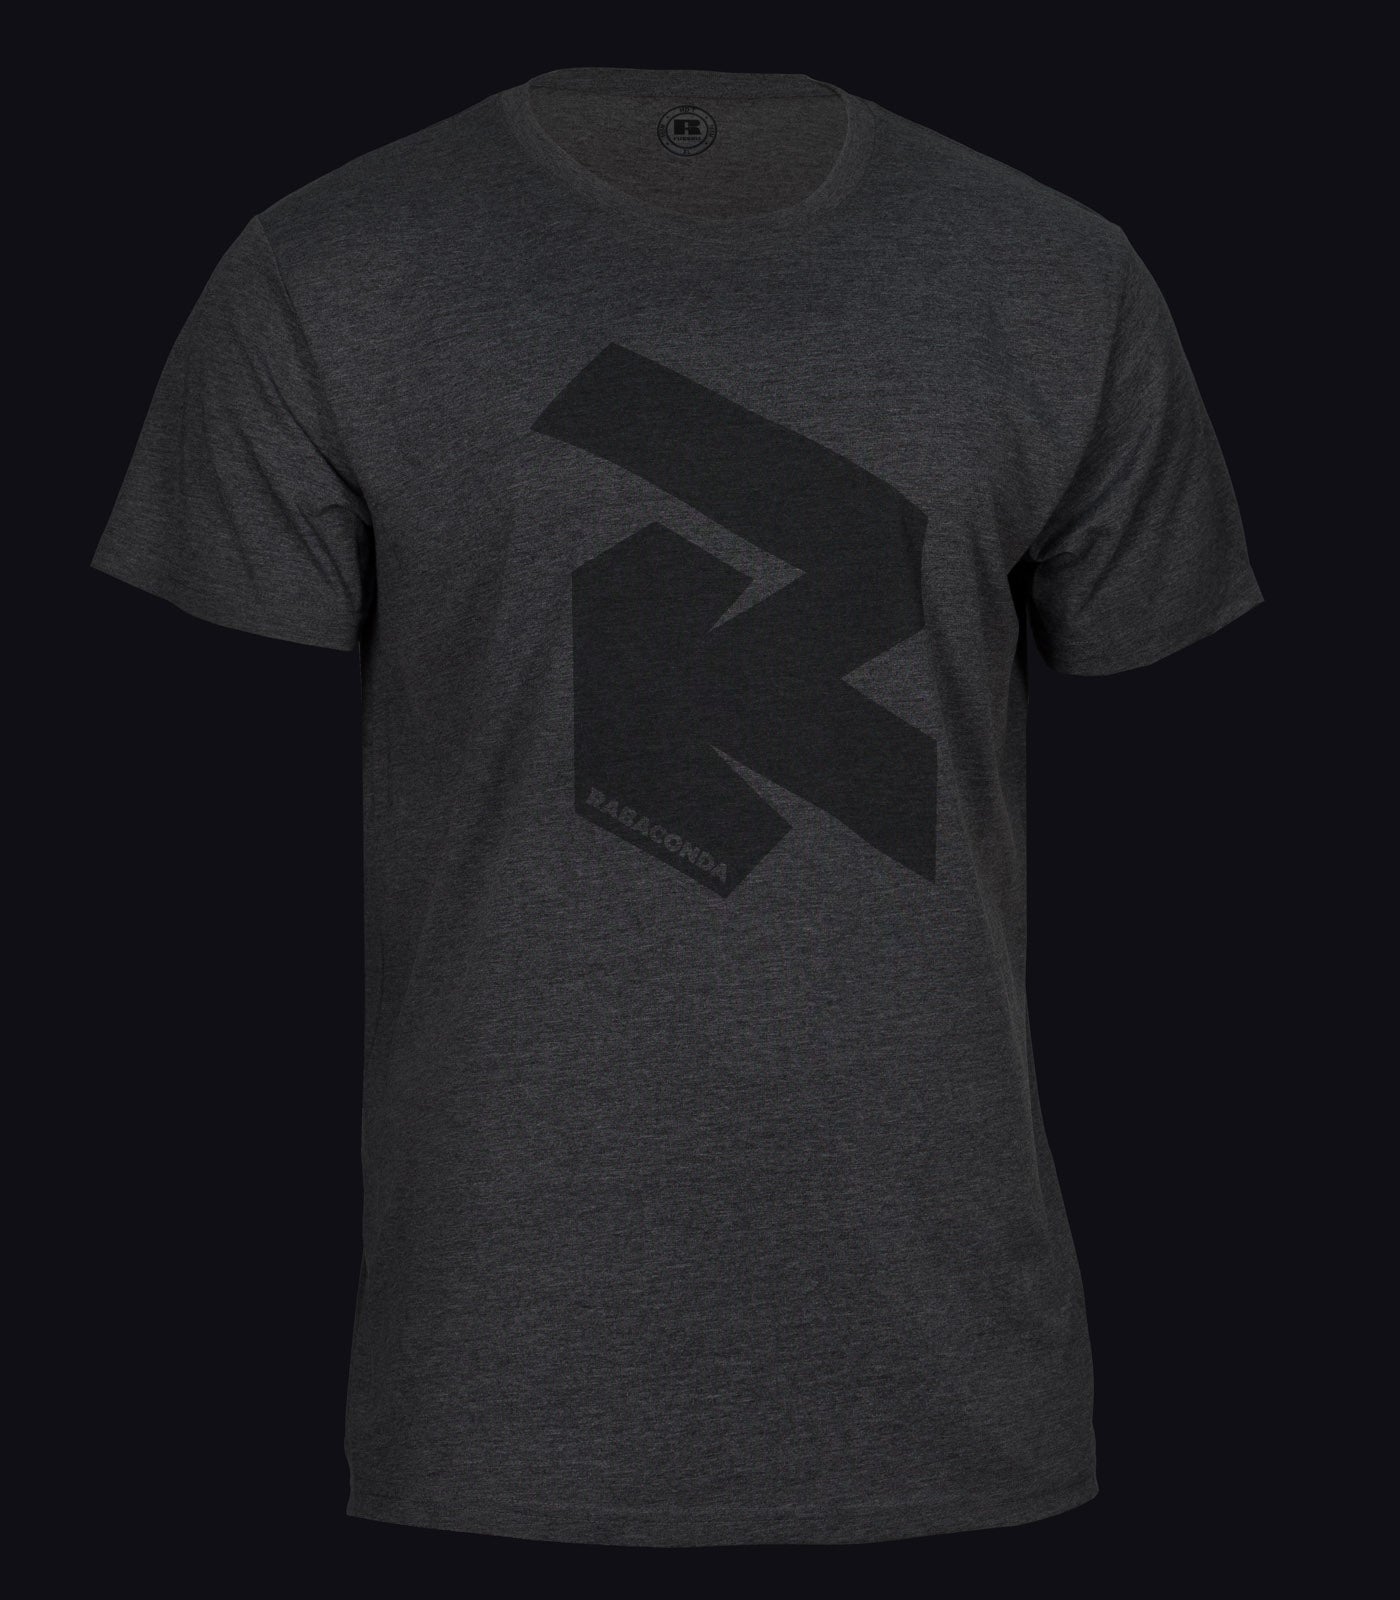 RabacondaRipperT-shirt-1_3413184e-418e-4265-8e30-e9d38608d369.jpg